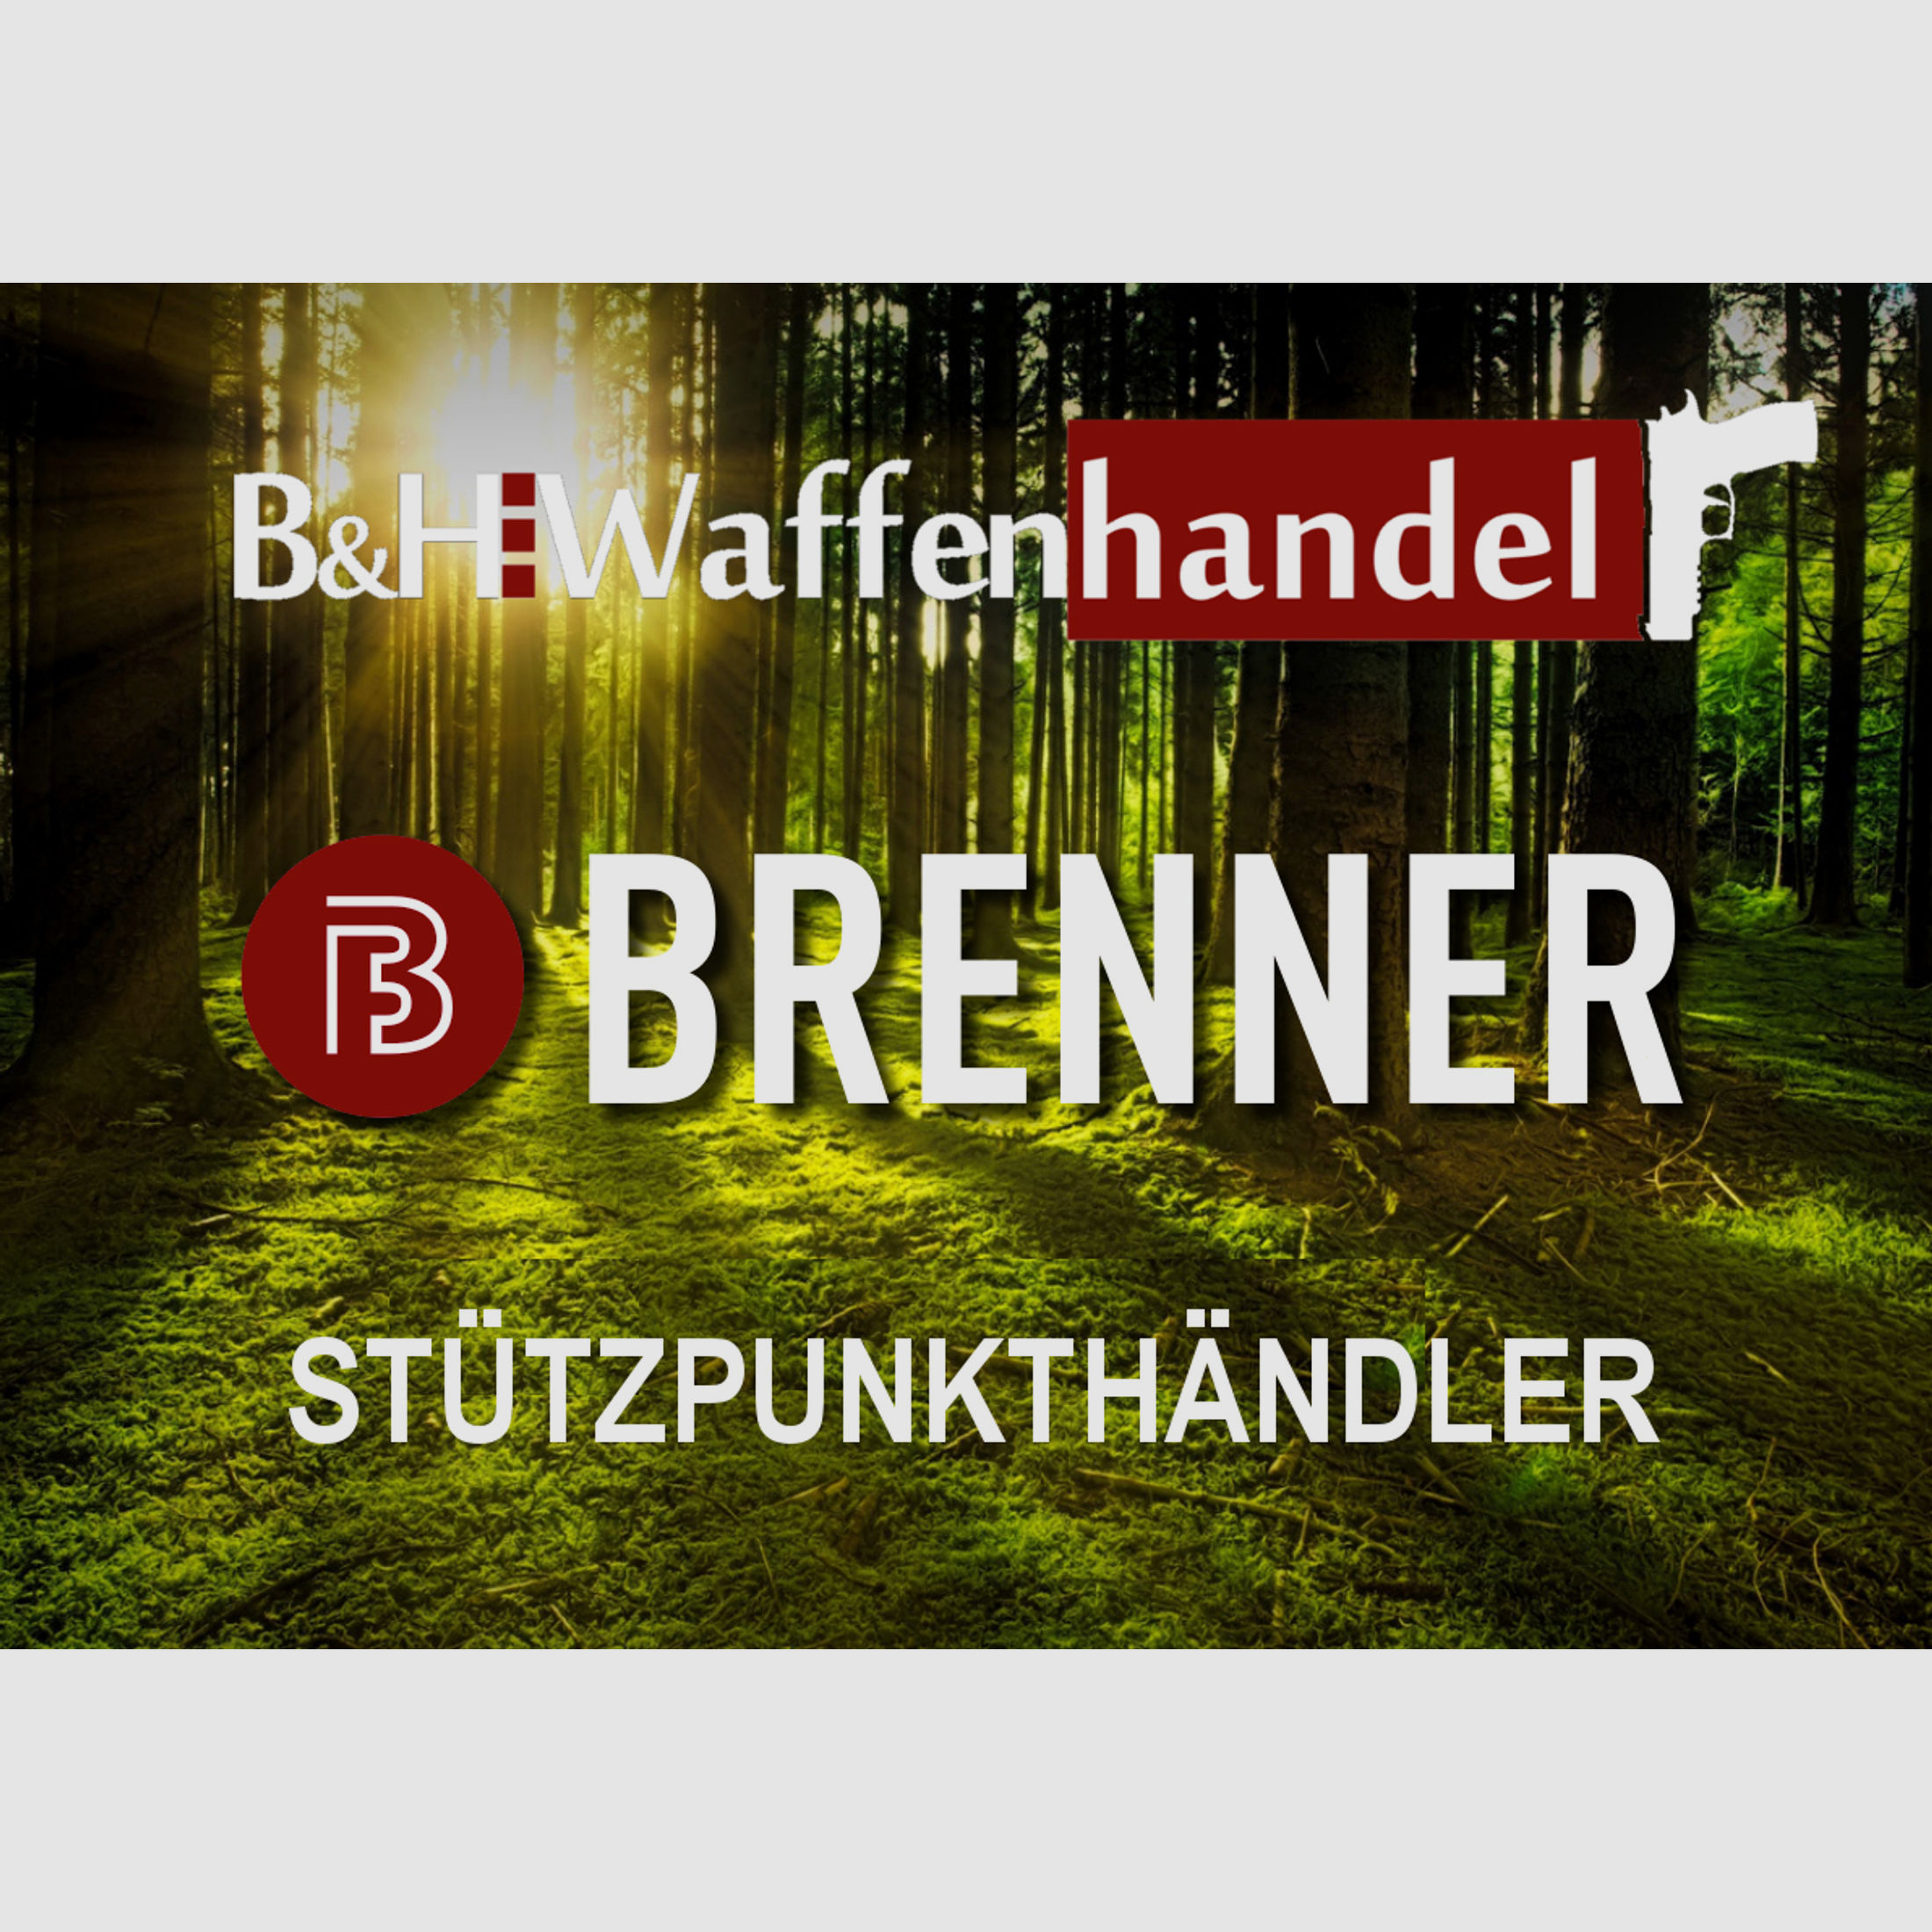 Auf Lager: Brenner BR 20 Holzschaft Repetierer mit Hawke Endurance 2.5-10x50  (Best.Nr.: BR20WP5)